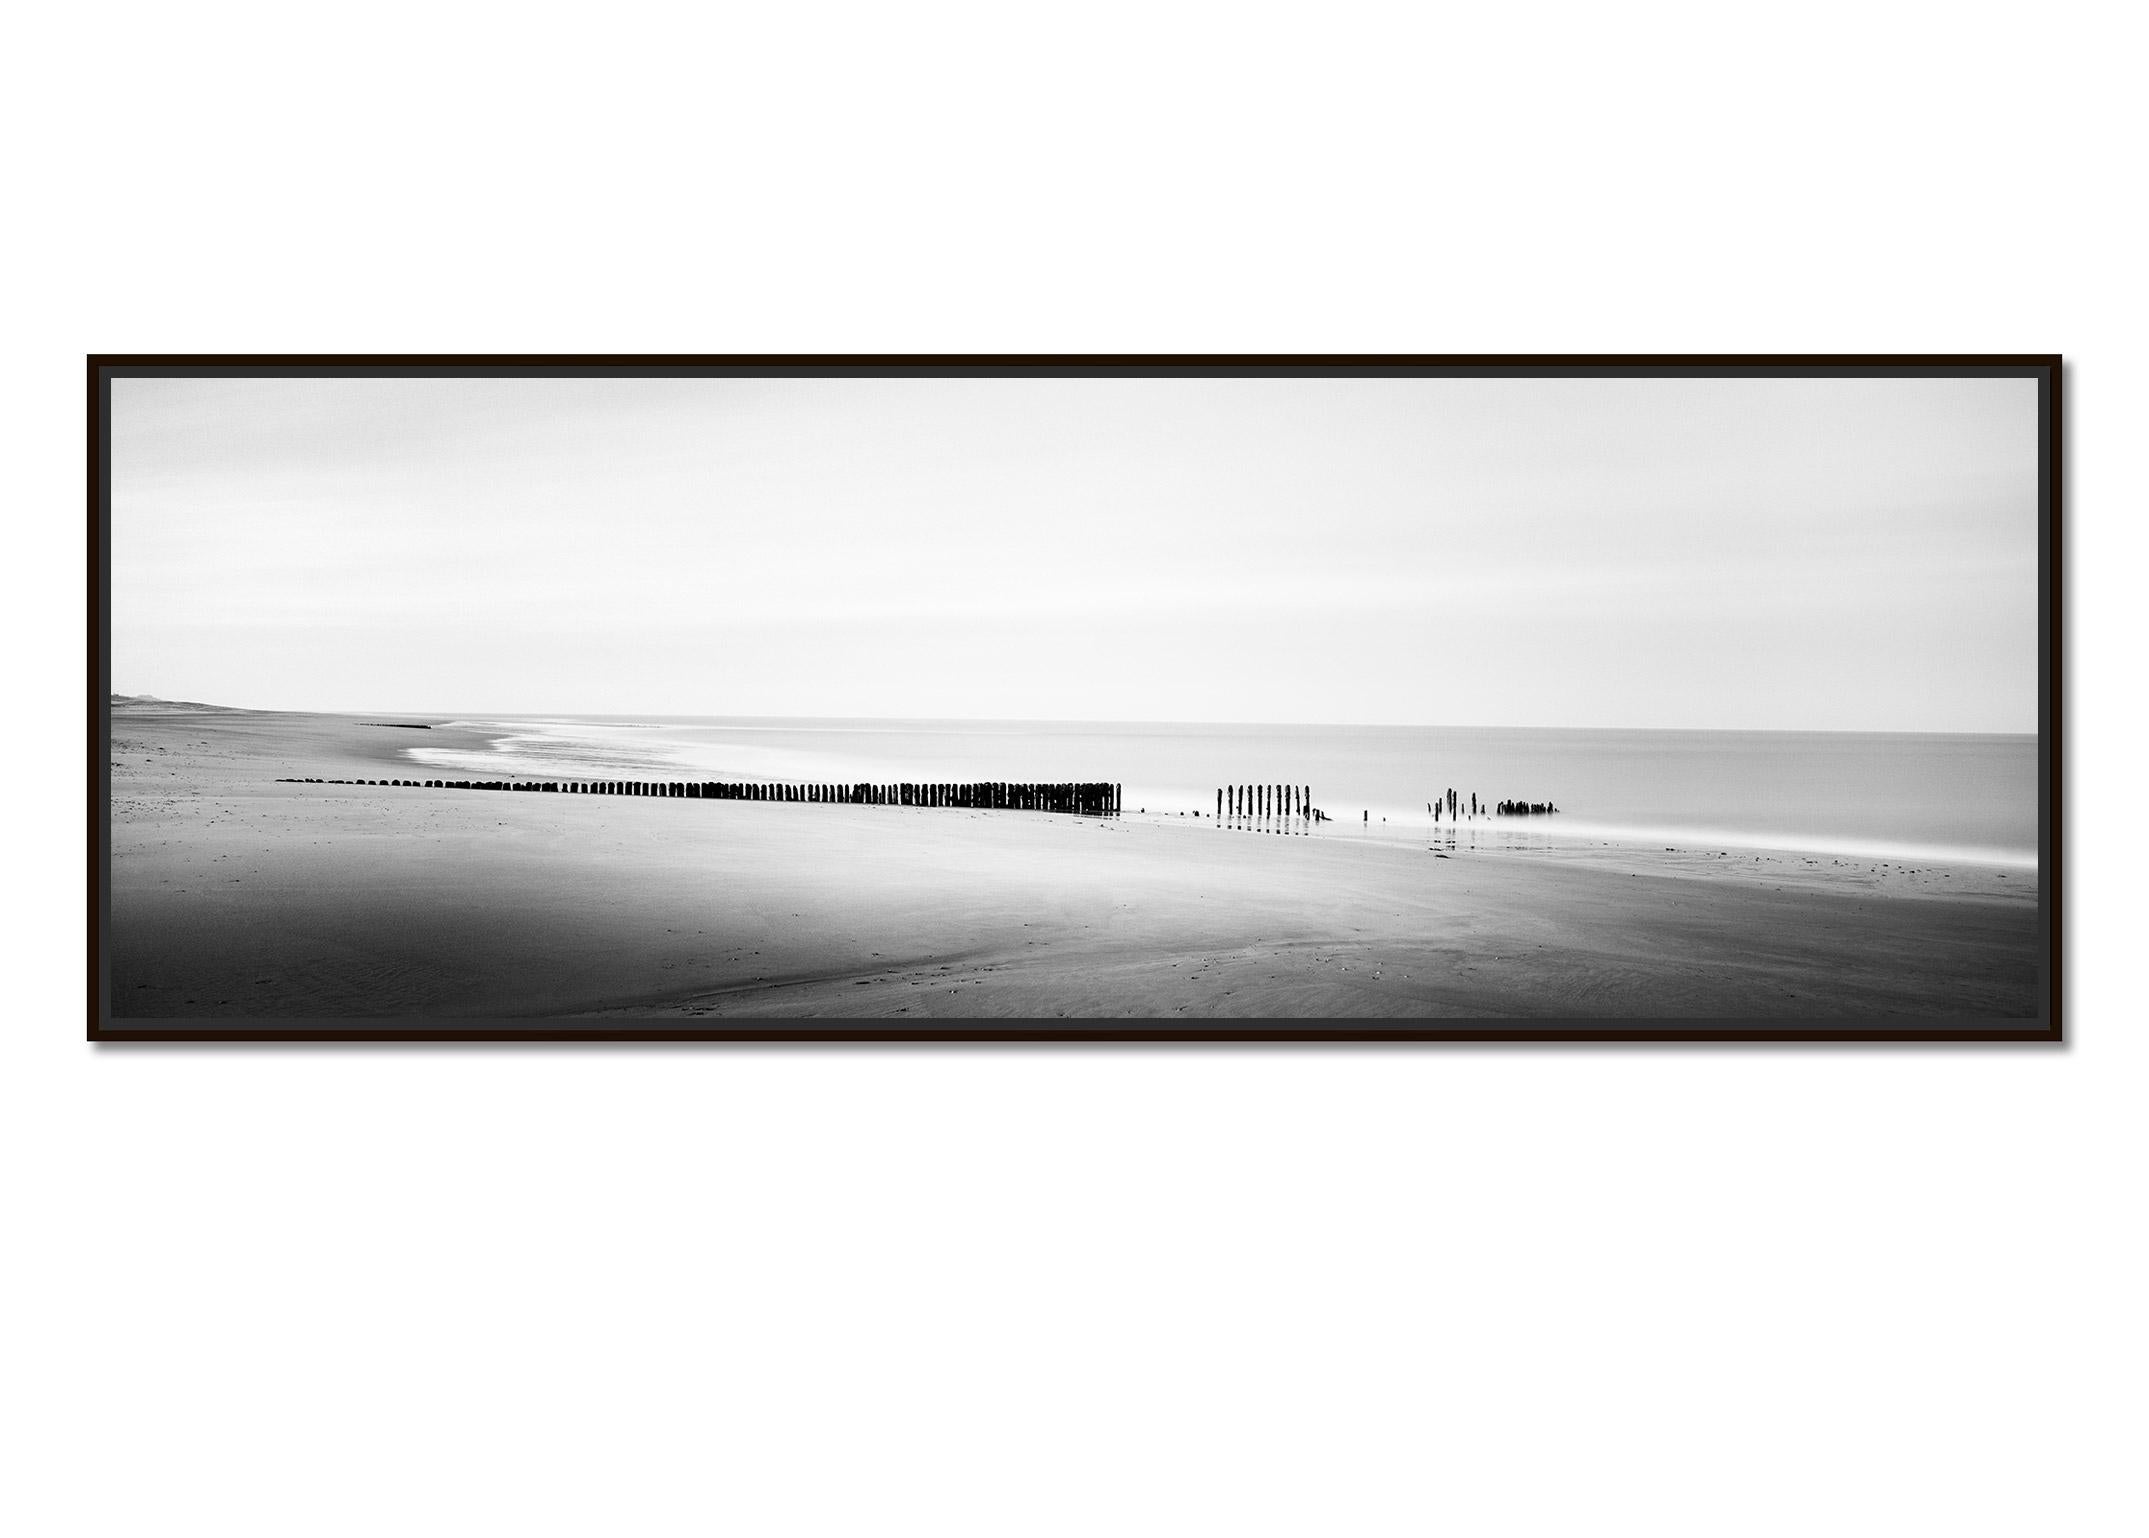 Broken Groyne, Beach, Sylt, Allemagne, tirage de photographies de paysages en noir et blanc - Photograph de Gerald Berghammer